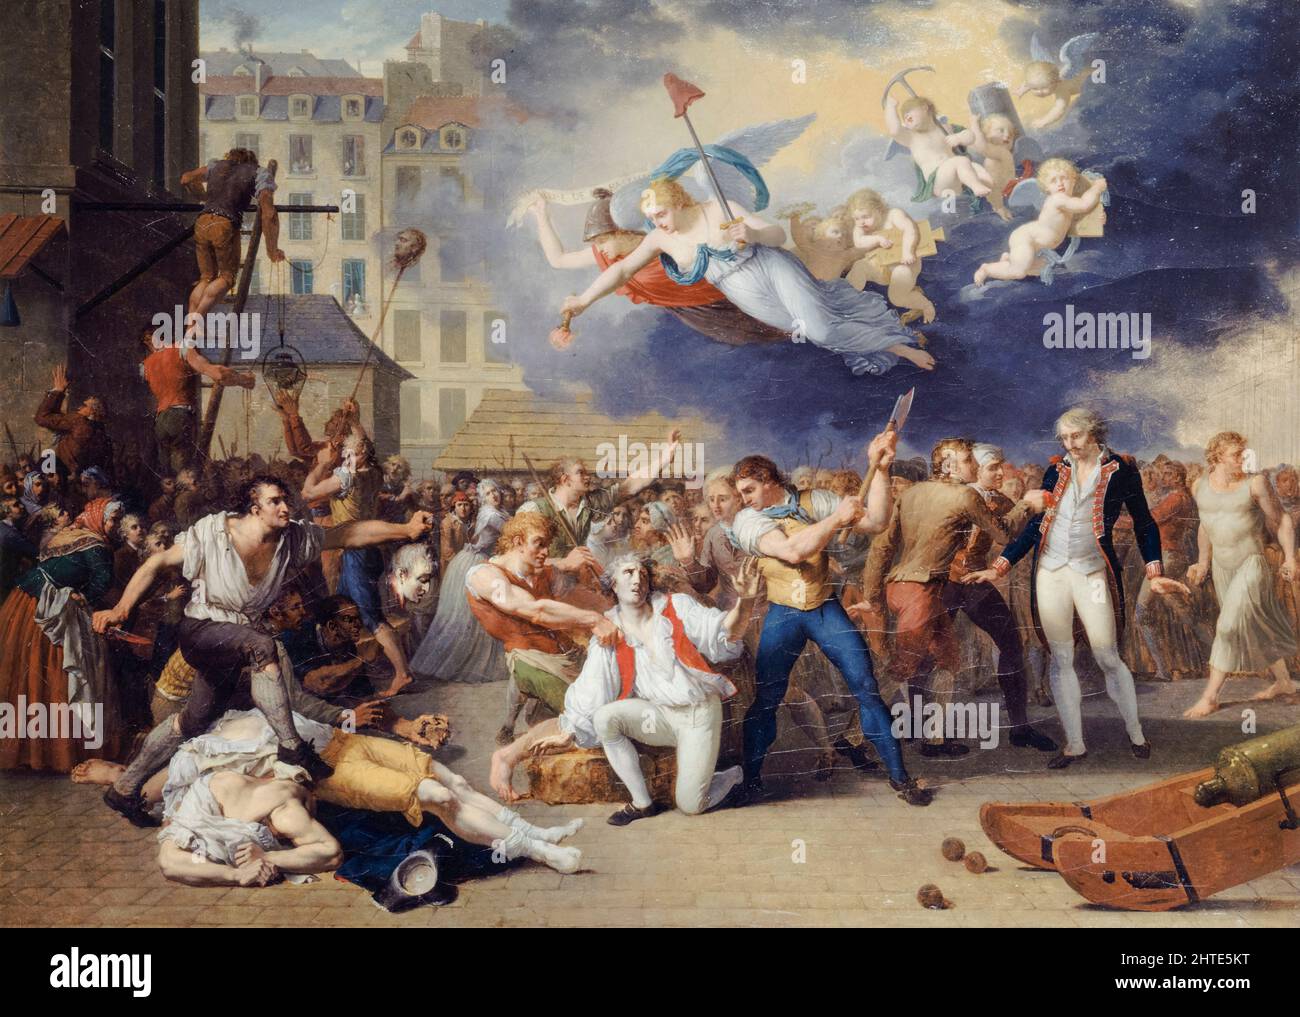 Le marquis de Pelleport (1754-1807), tente en vain de sauver le major de la Bastille, Antoine-Jérôme de Losme-Salbray, juillet 14th 1789, (le contage de la Bastille), huile sur toile peinture de la Révolution française de Charles Thévenin, 1789 Banque D'Images